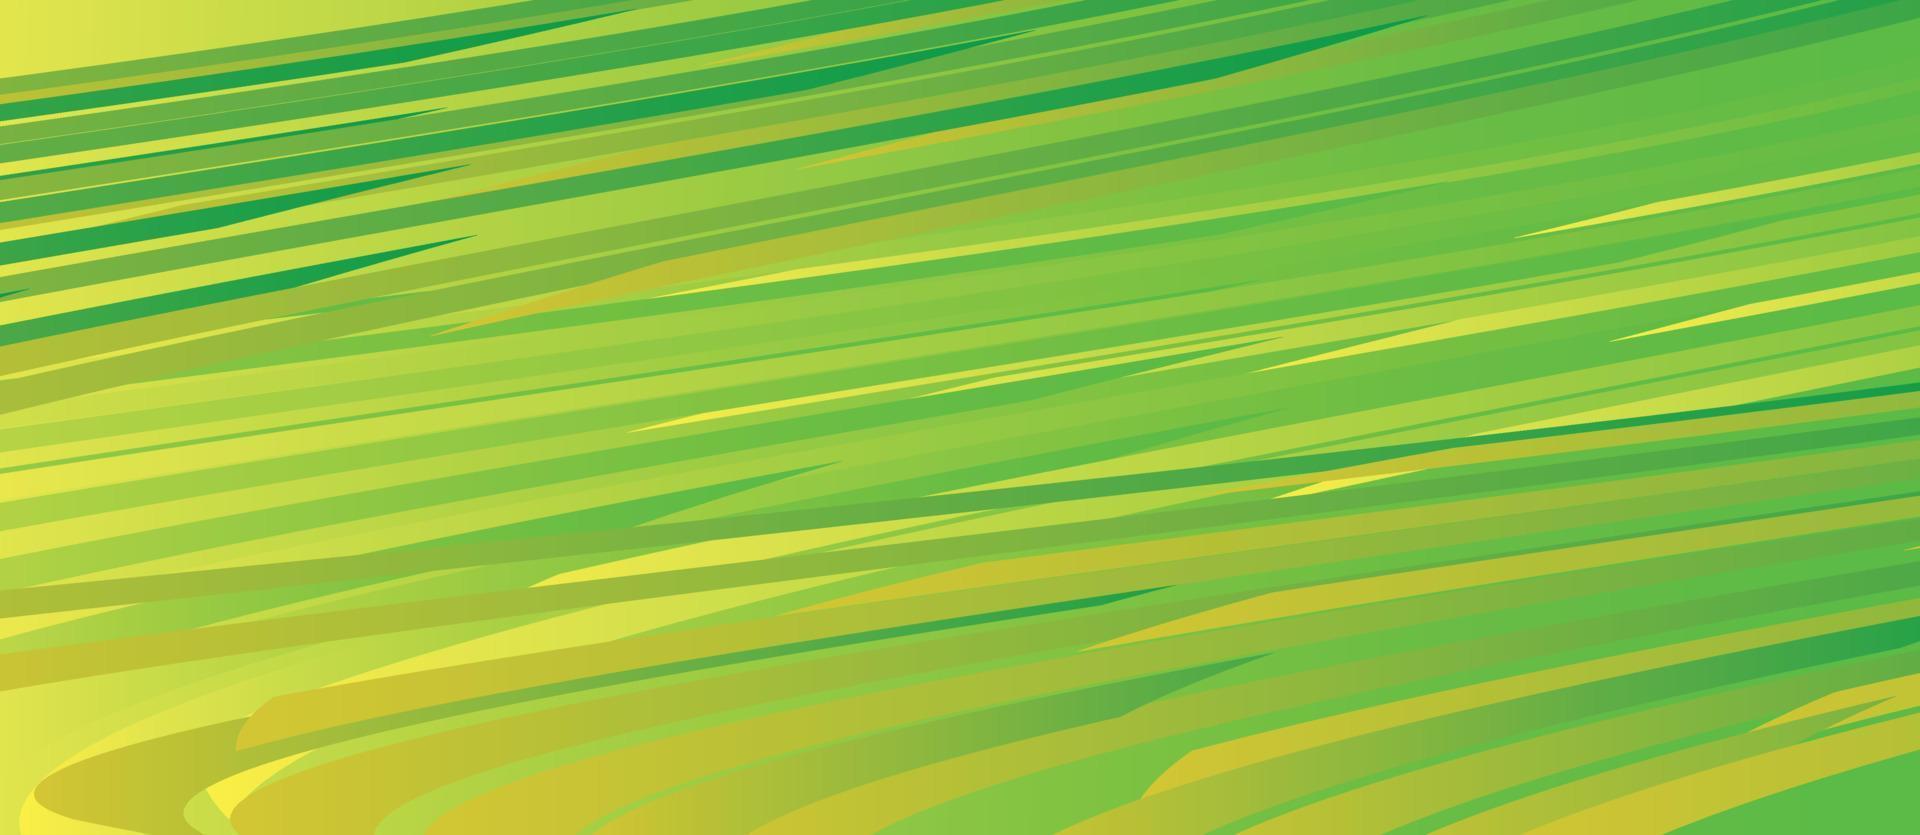 Fondo de tallado de papel de capas verdes abstractas. Estilo de arte de papel de diseño de concepto de plantilla de negocio de naturaleza. Ilustración de vector. vector